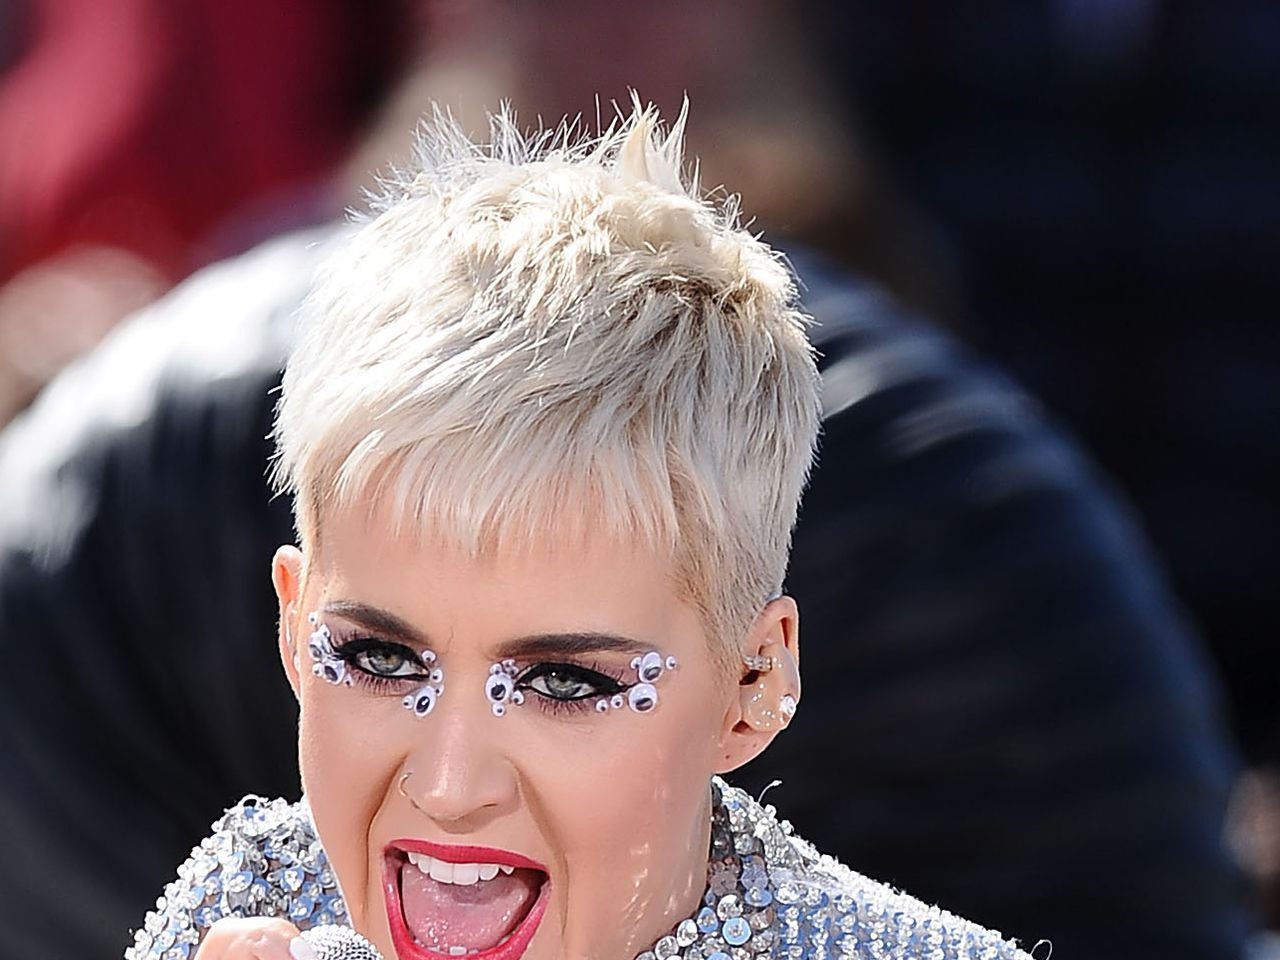 Le aspirazioni di una giovane madre di diventare un’attrice sono state deluse quando Katy Perry l’ha insultata. I fan stanno attaccando l’artista per il suo “commento vergognoso” ➤ Buzzday.info